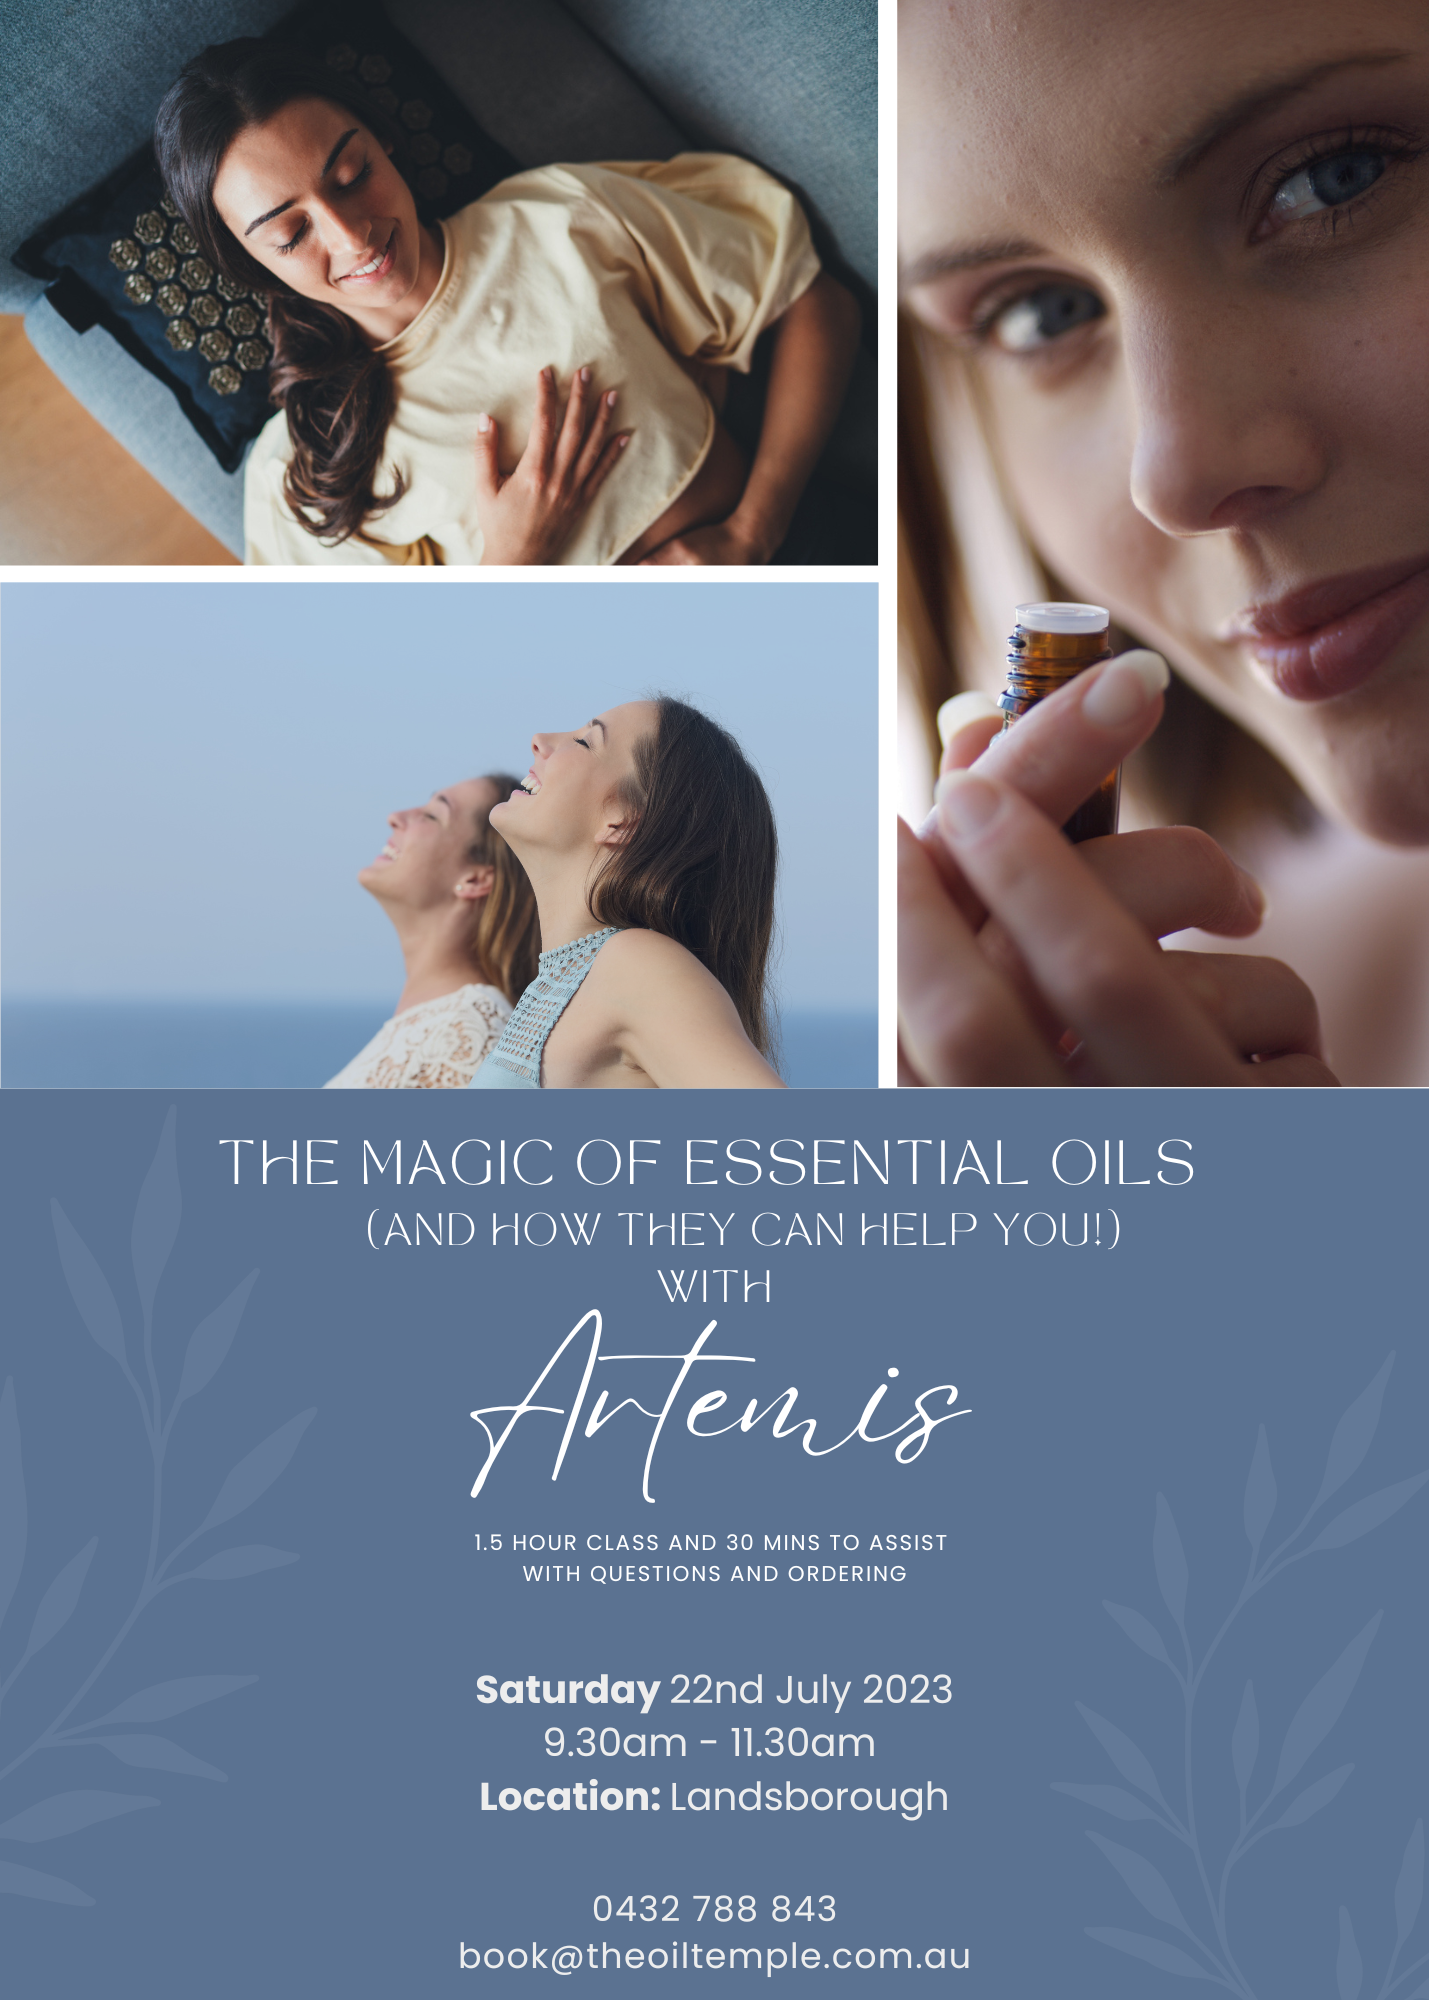 The Magic of Essential Oils with Artemis